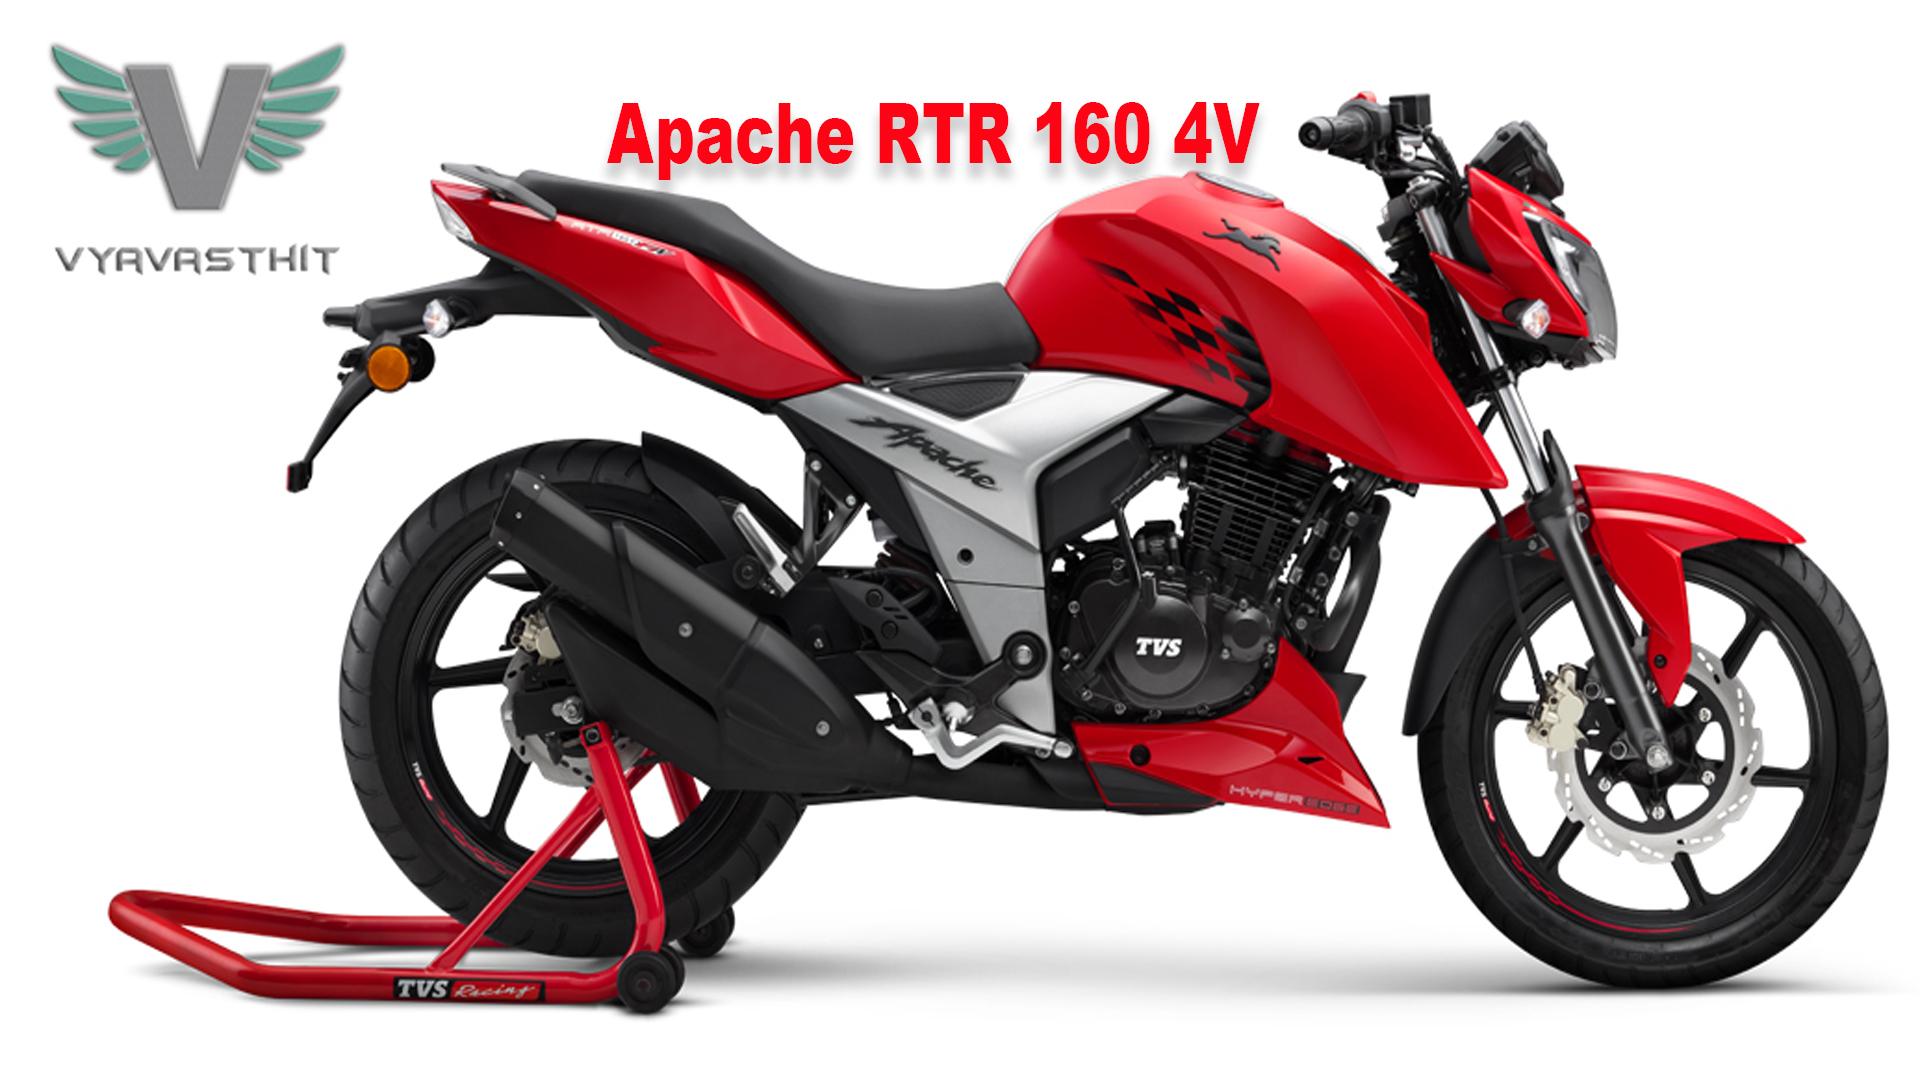 TVS Apache RTR 160 4V launched at Rs 490 (HINDI)